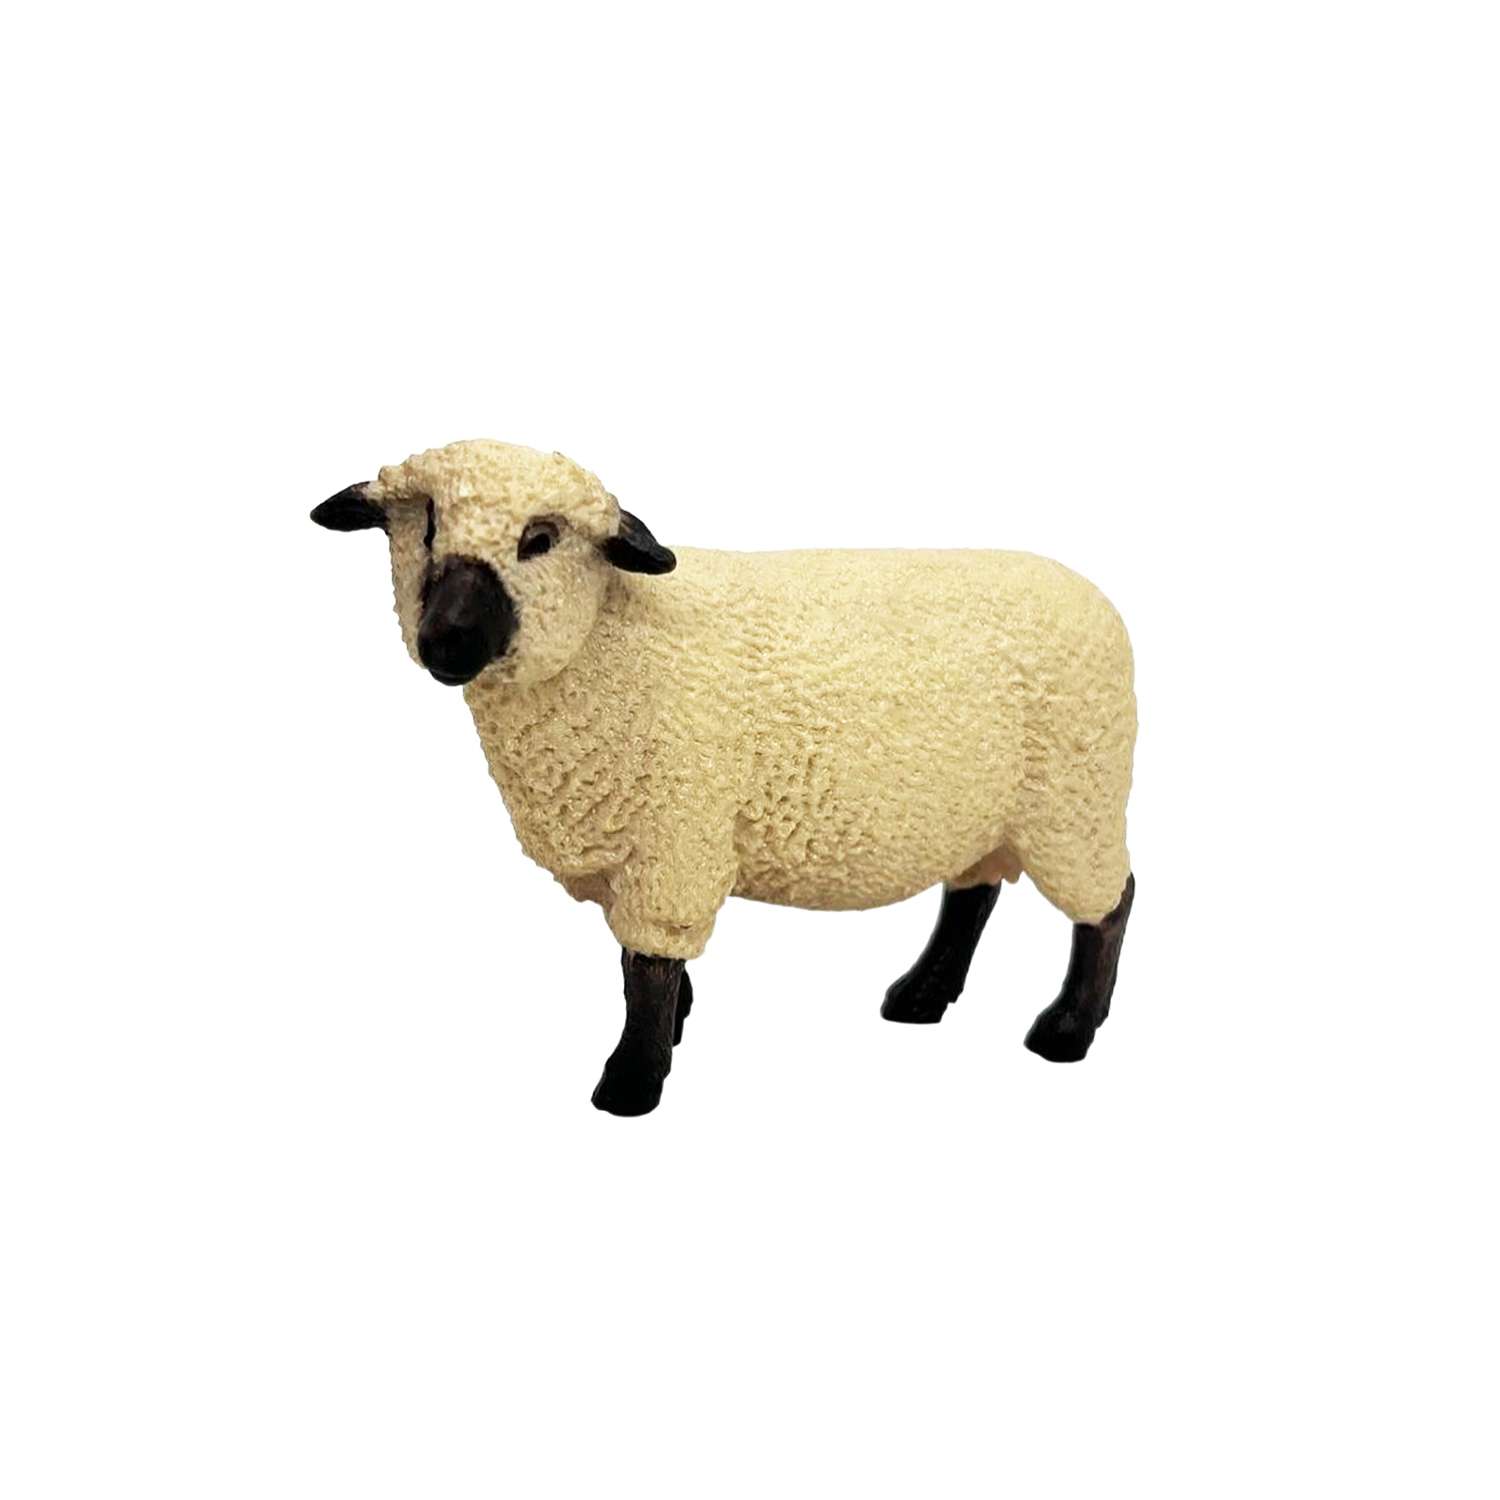 Фигурка животного Детское Время Овца породы Шропшир - фото 6